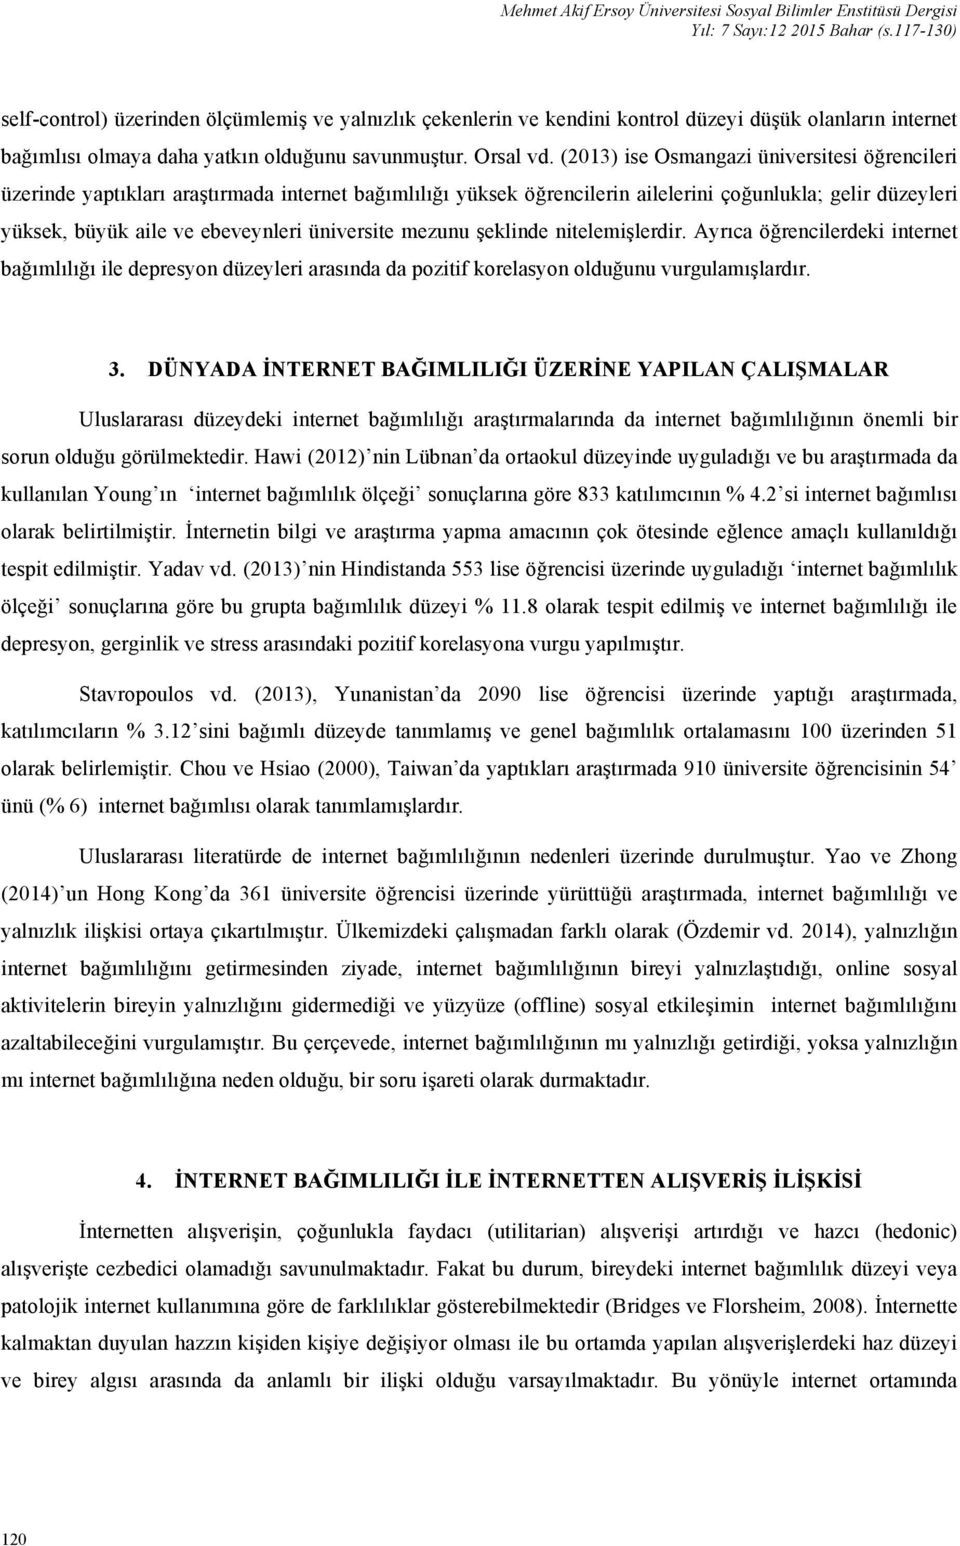 (2013) ise Osmangazi üniversitesi öğrencileri üzerinde yaptıkları araştırmada internet bağımlılığı yüksek öğrencilerin ailelerini çoğunlukla; gelir düzeyleri yüksek, büyük aile ve ebeveynleri